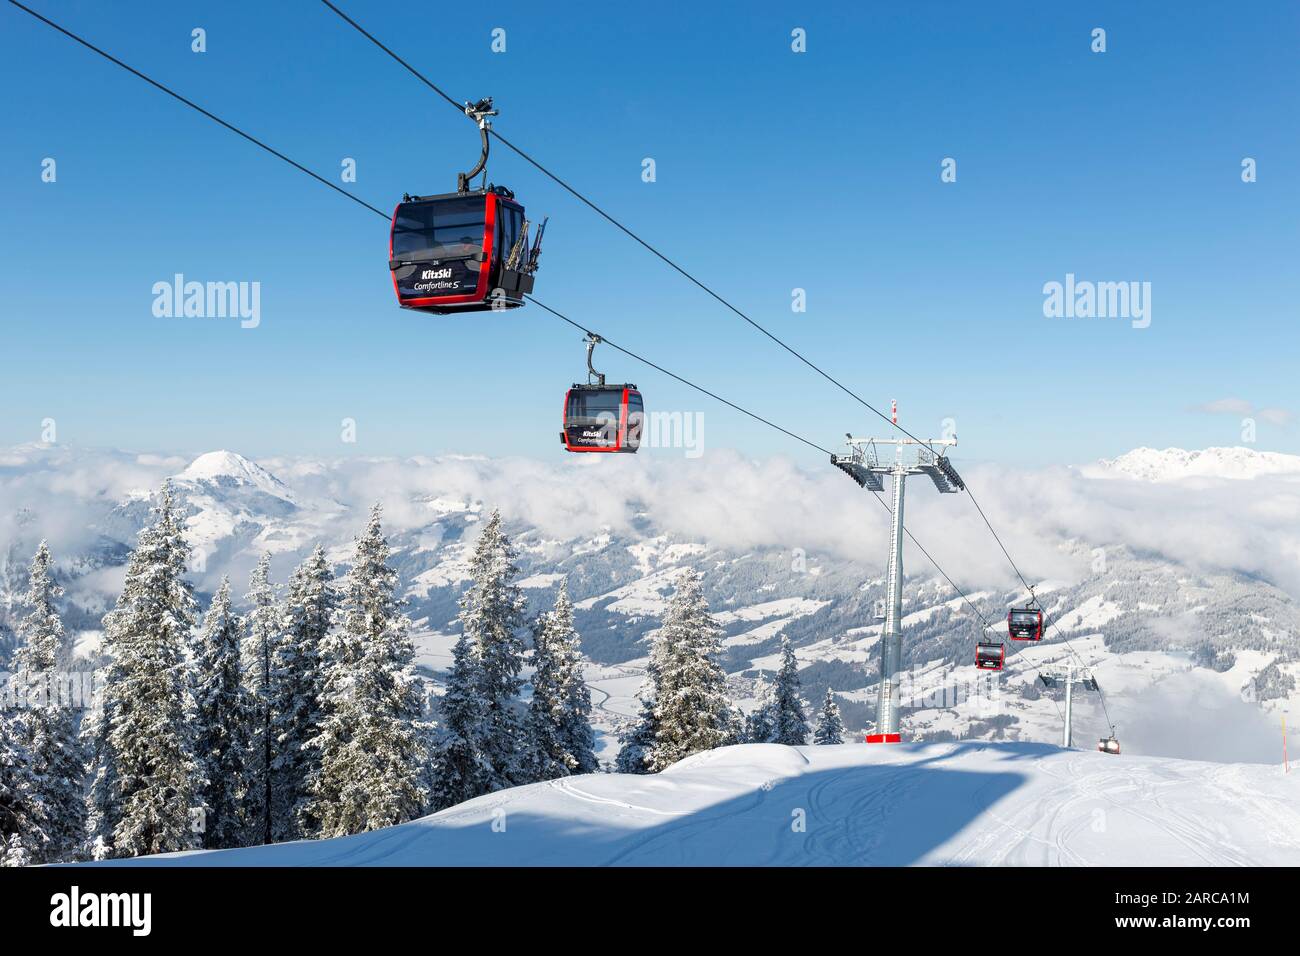 Kitzbuhel, AUTRICHE - 20 JANVIER 2020 : télécabine de ski de Fleckalmbahn un téléphérique amélioré a ouvert ses portes en décembre 2019 pour transporter les visiteurs à l'ar Kitzski Banque D'Images